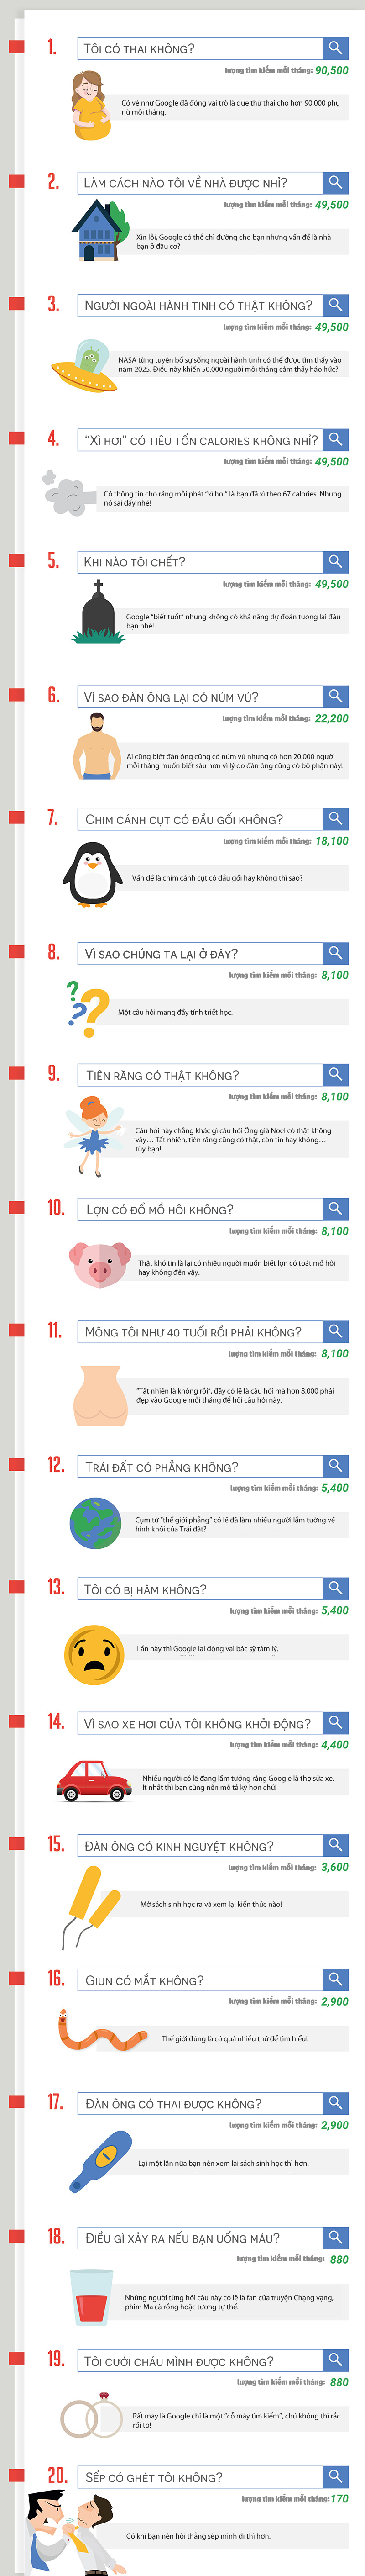 Thật khó tin, đây là 20 câu hỏi kỳ quặc nhất mà Google nhận được hàng nghìn lần mỗi tháng! - Ảnh 1.